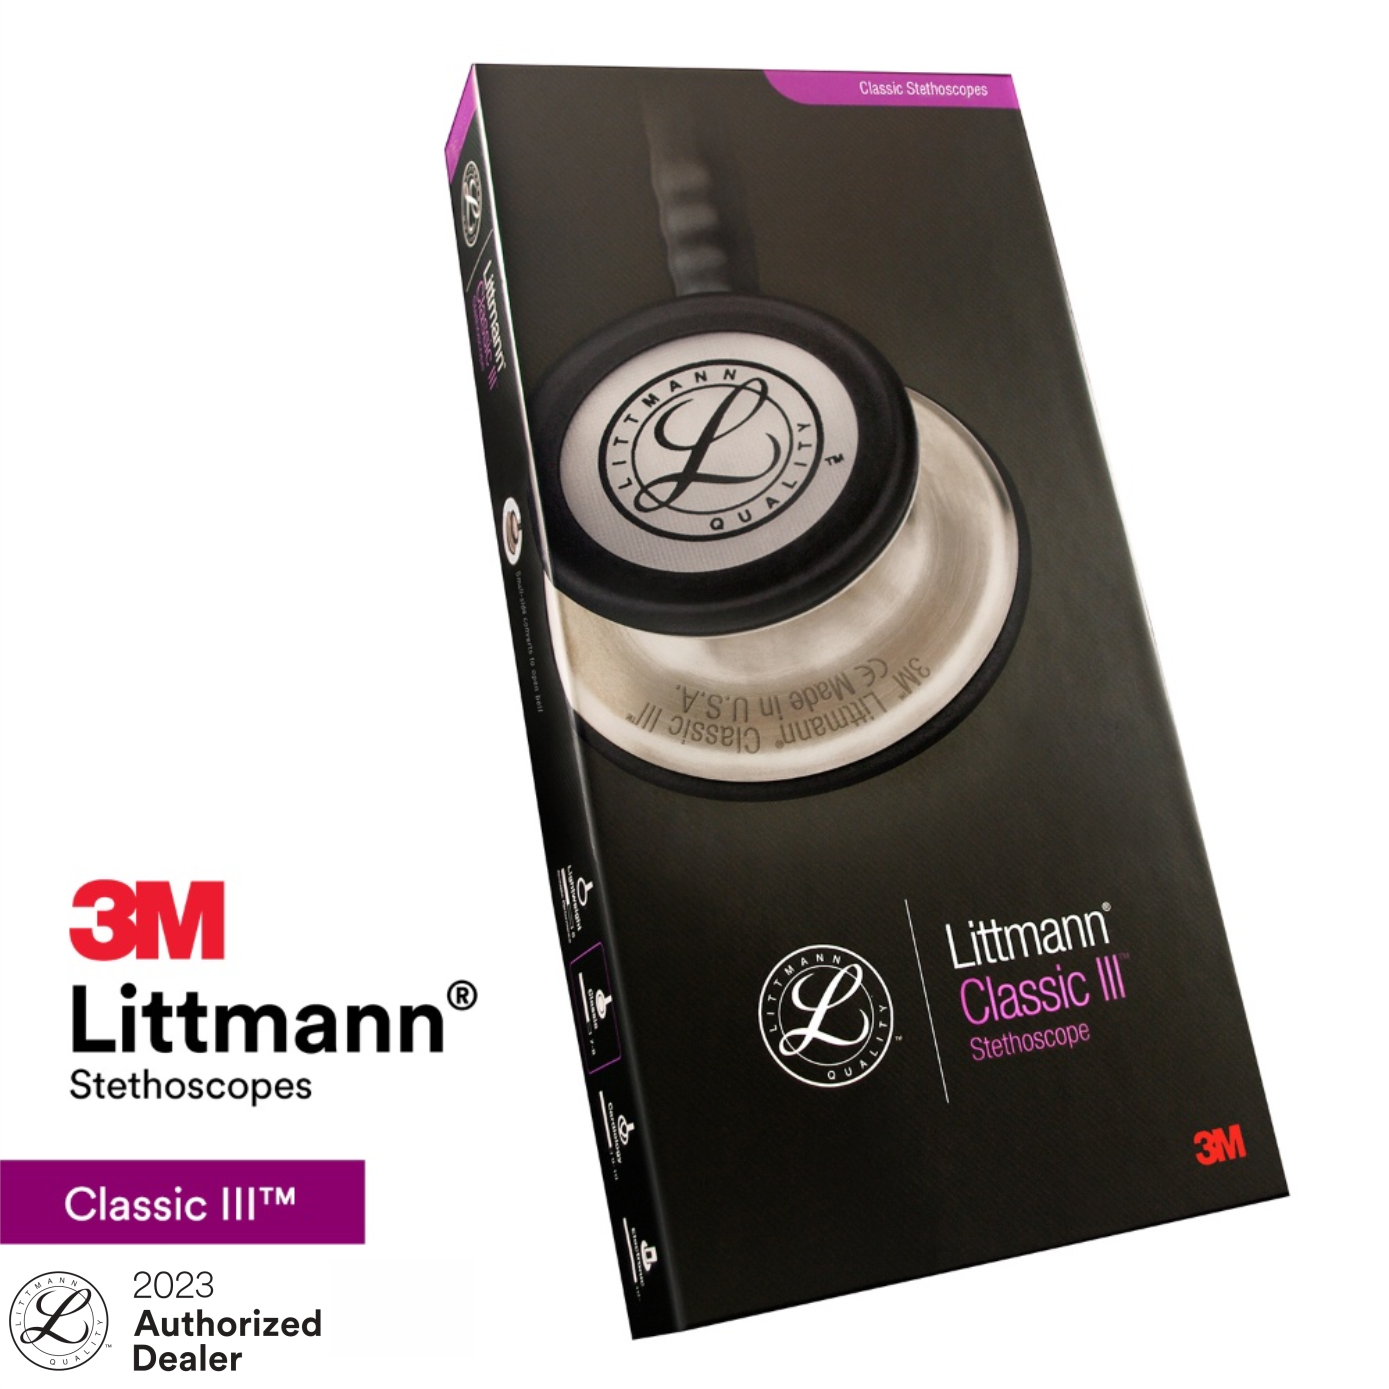 ống nghe 3m littmann classic iii, lớp phủ tiêu chuẩn 4